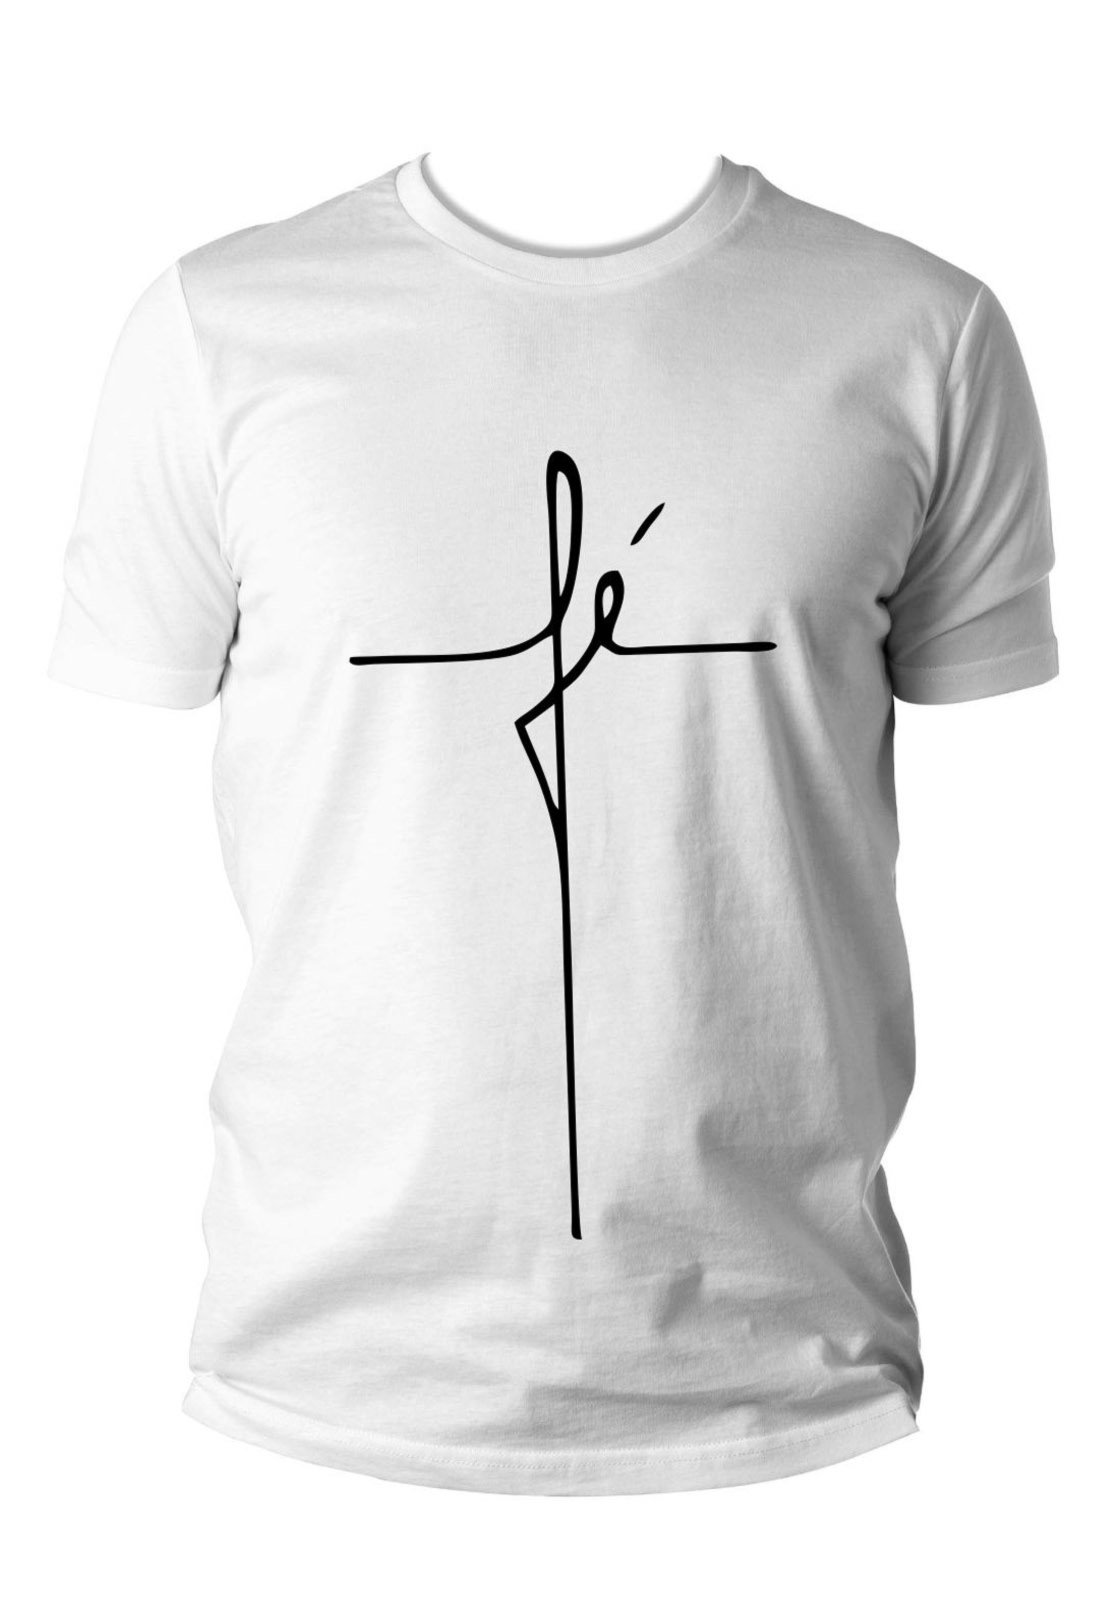 frases evangelicas para camisetas